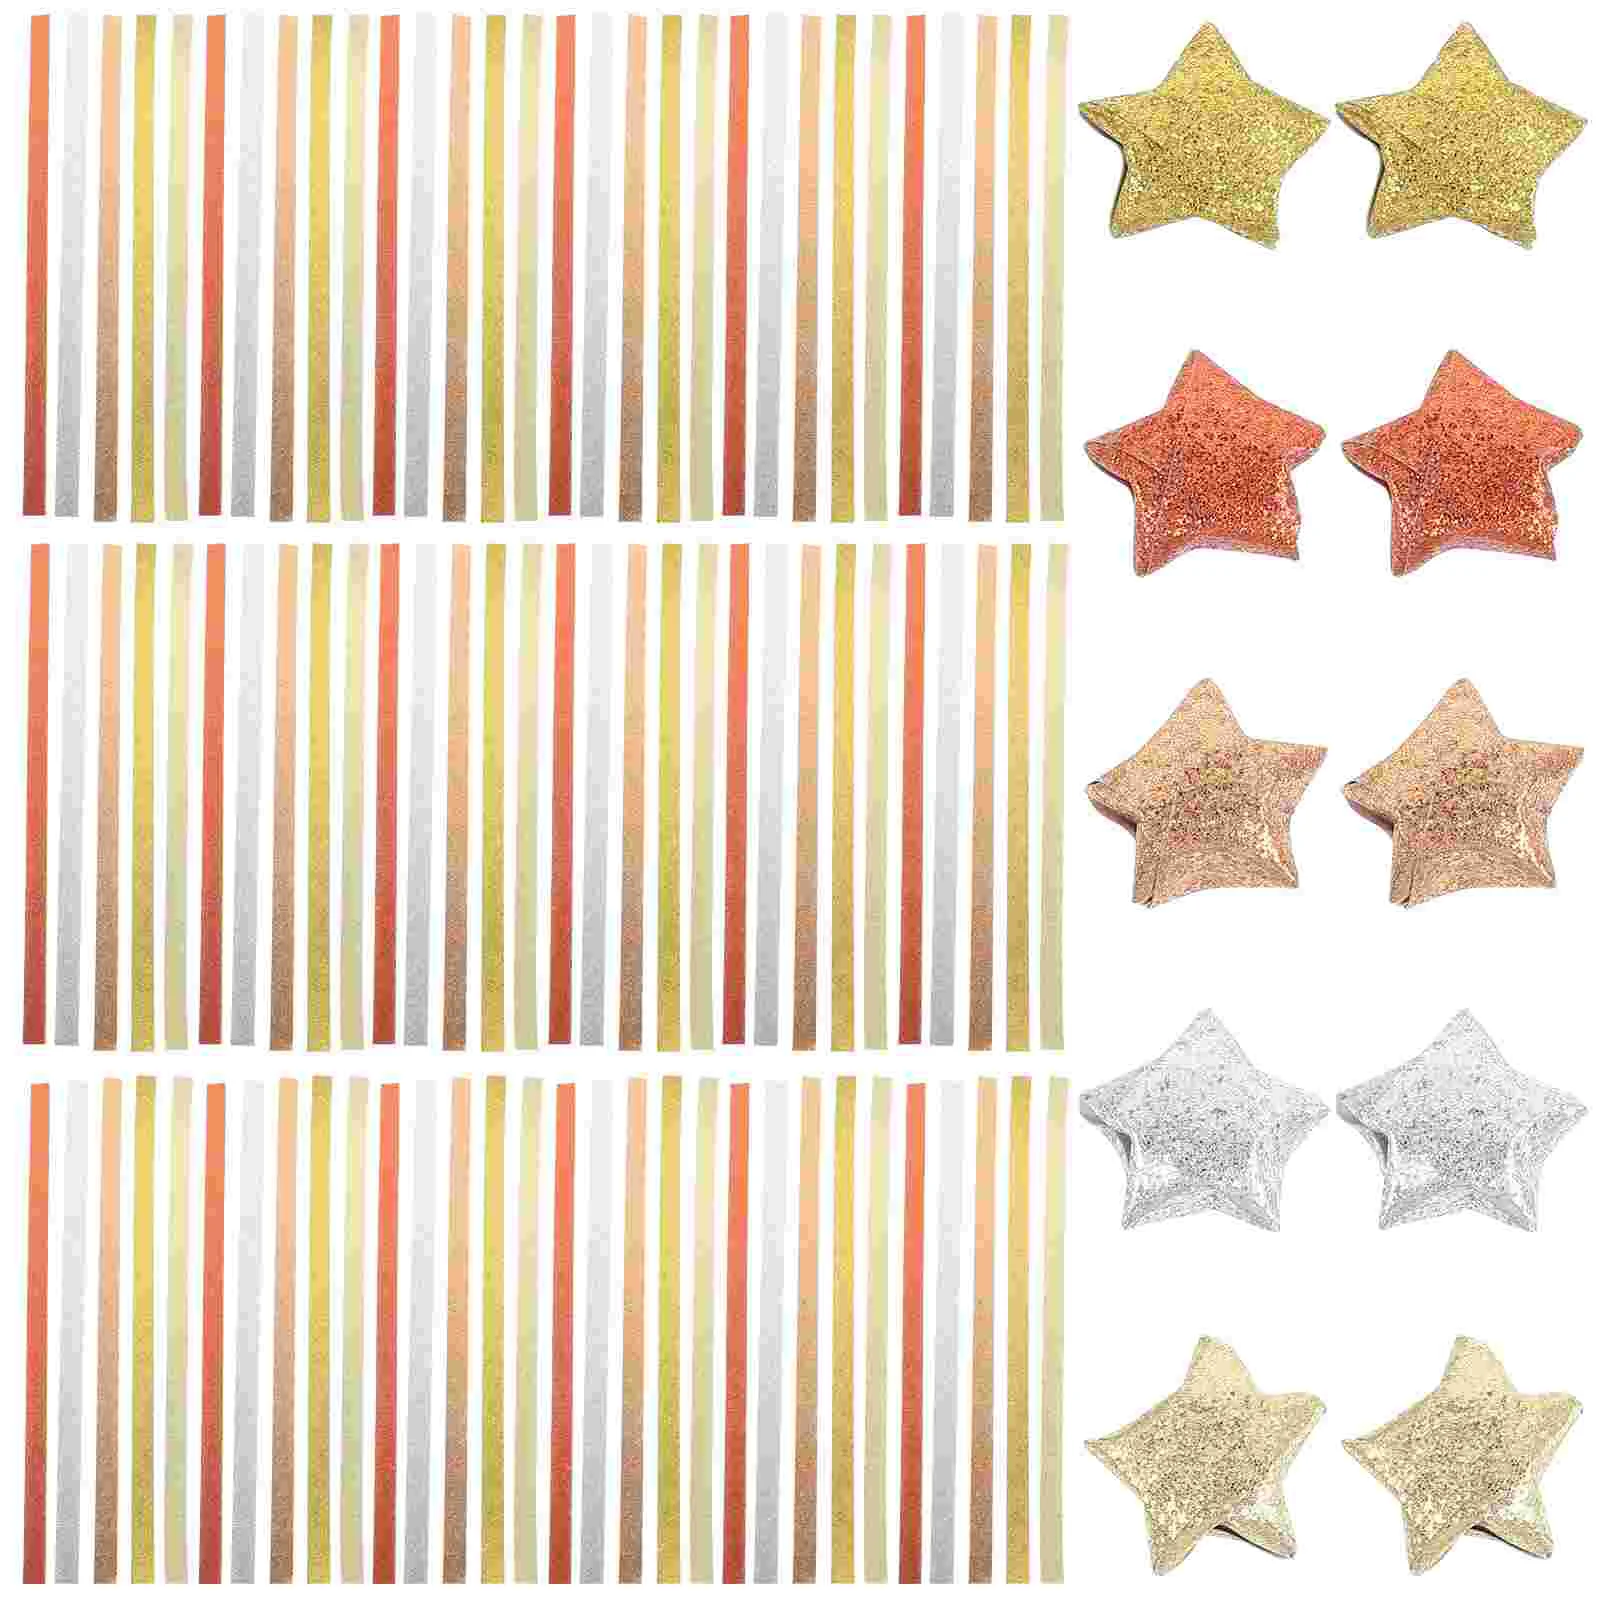 

Оригами, Яркие полоски, 5 цветов в ассортименте, Звездные бумажные полоски, блестящие бумажные полоски для украшения оригами